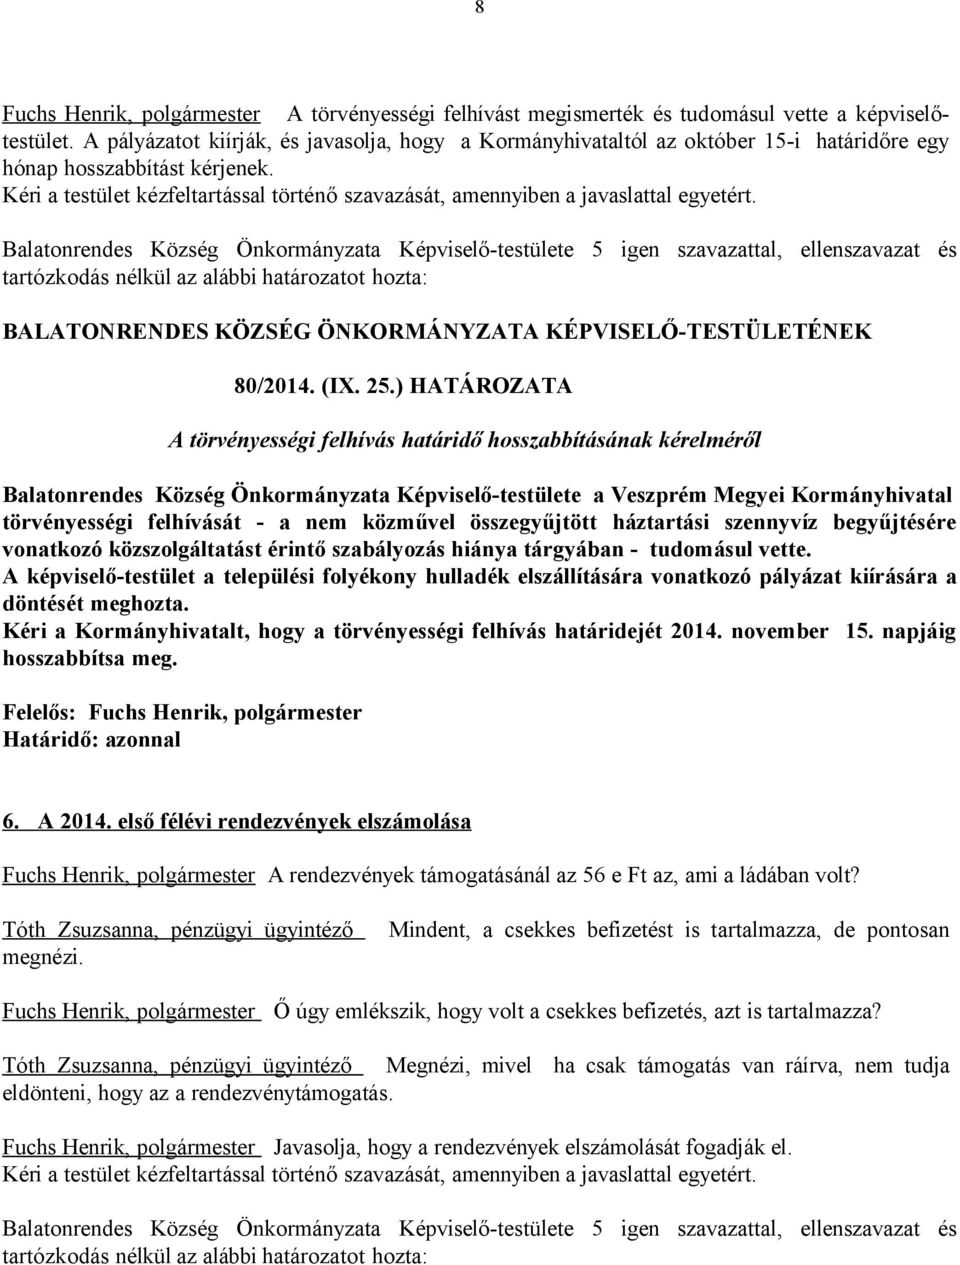 ) HATÁROZATA A törvényességi felhívás határidő hosszabbításának kérelméről Balatonrendes Község Önkormányzata Képviselő-testülete a Veszprém Megyei Kormányhivatal törvényességi felhívását - a nem